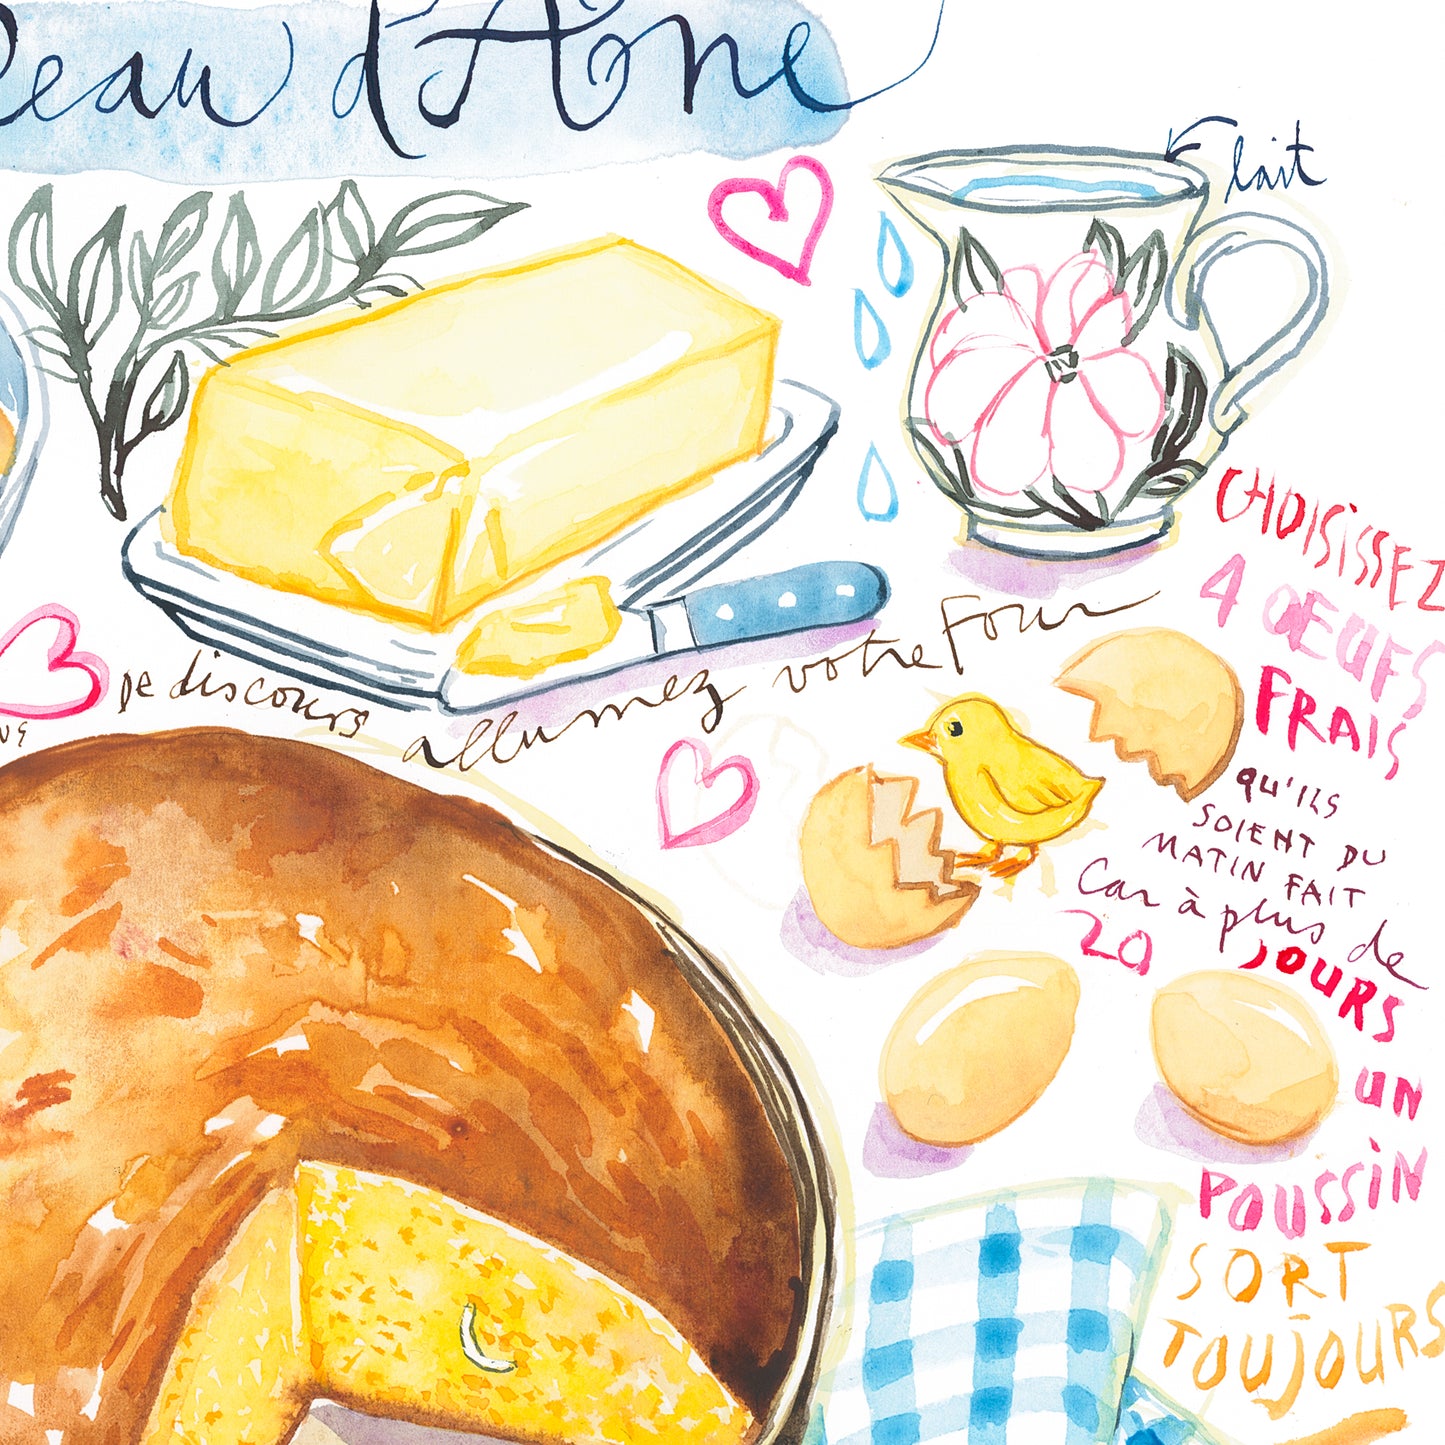 La recette du Cake d'Amour de Peau d'Âne. Original watercolor painting